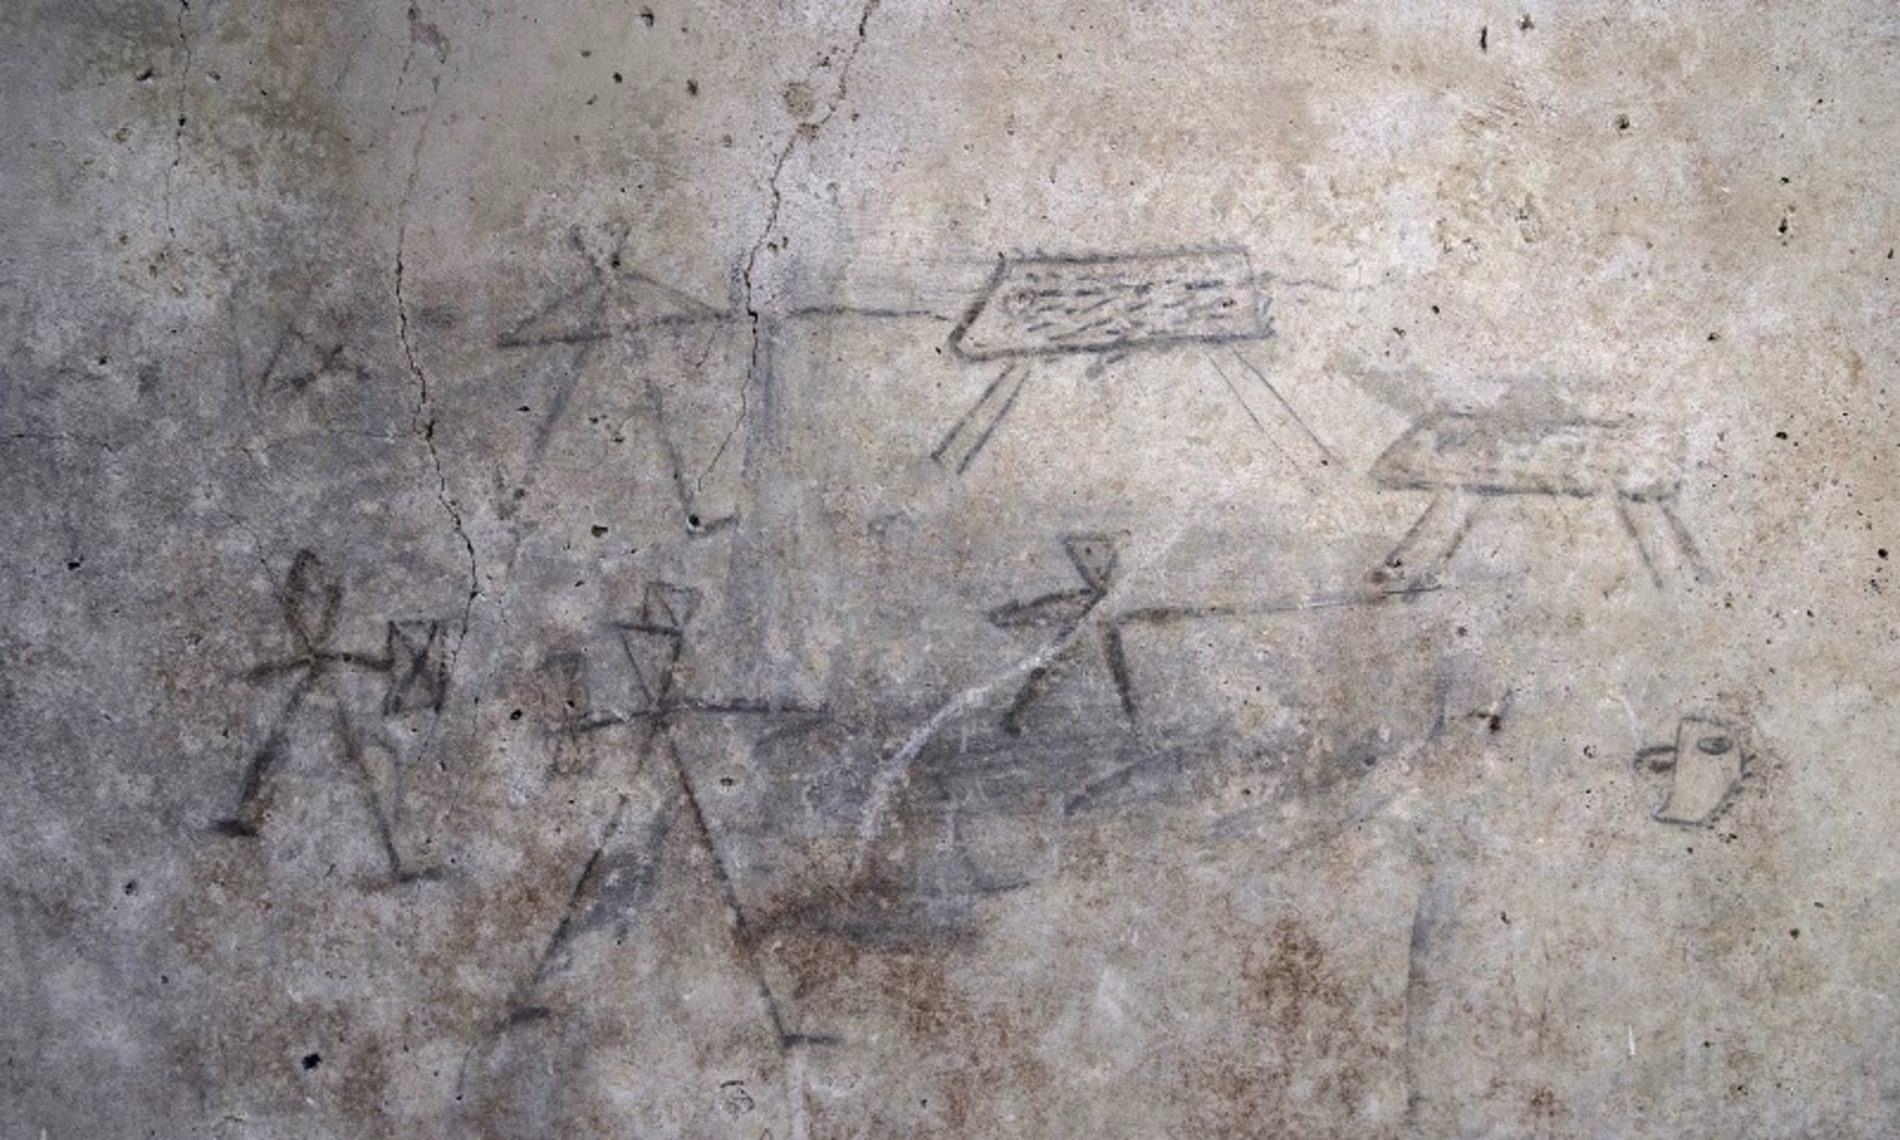 Gladiátorokat ábrázoló gyerekrajzok kerültek elő Pompejiből